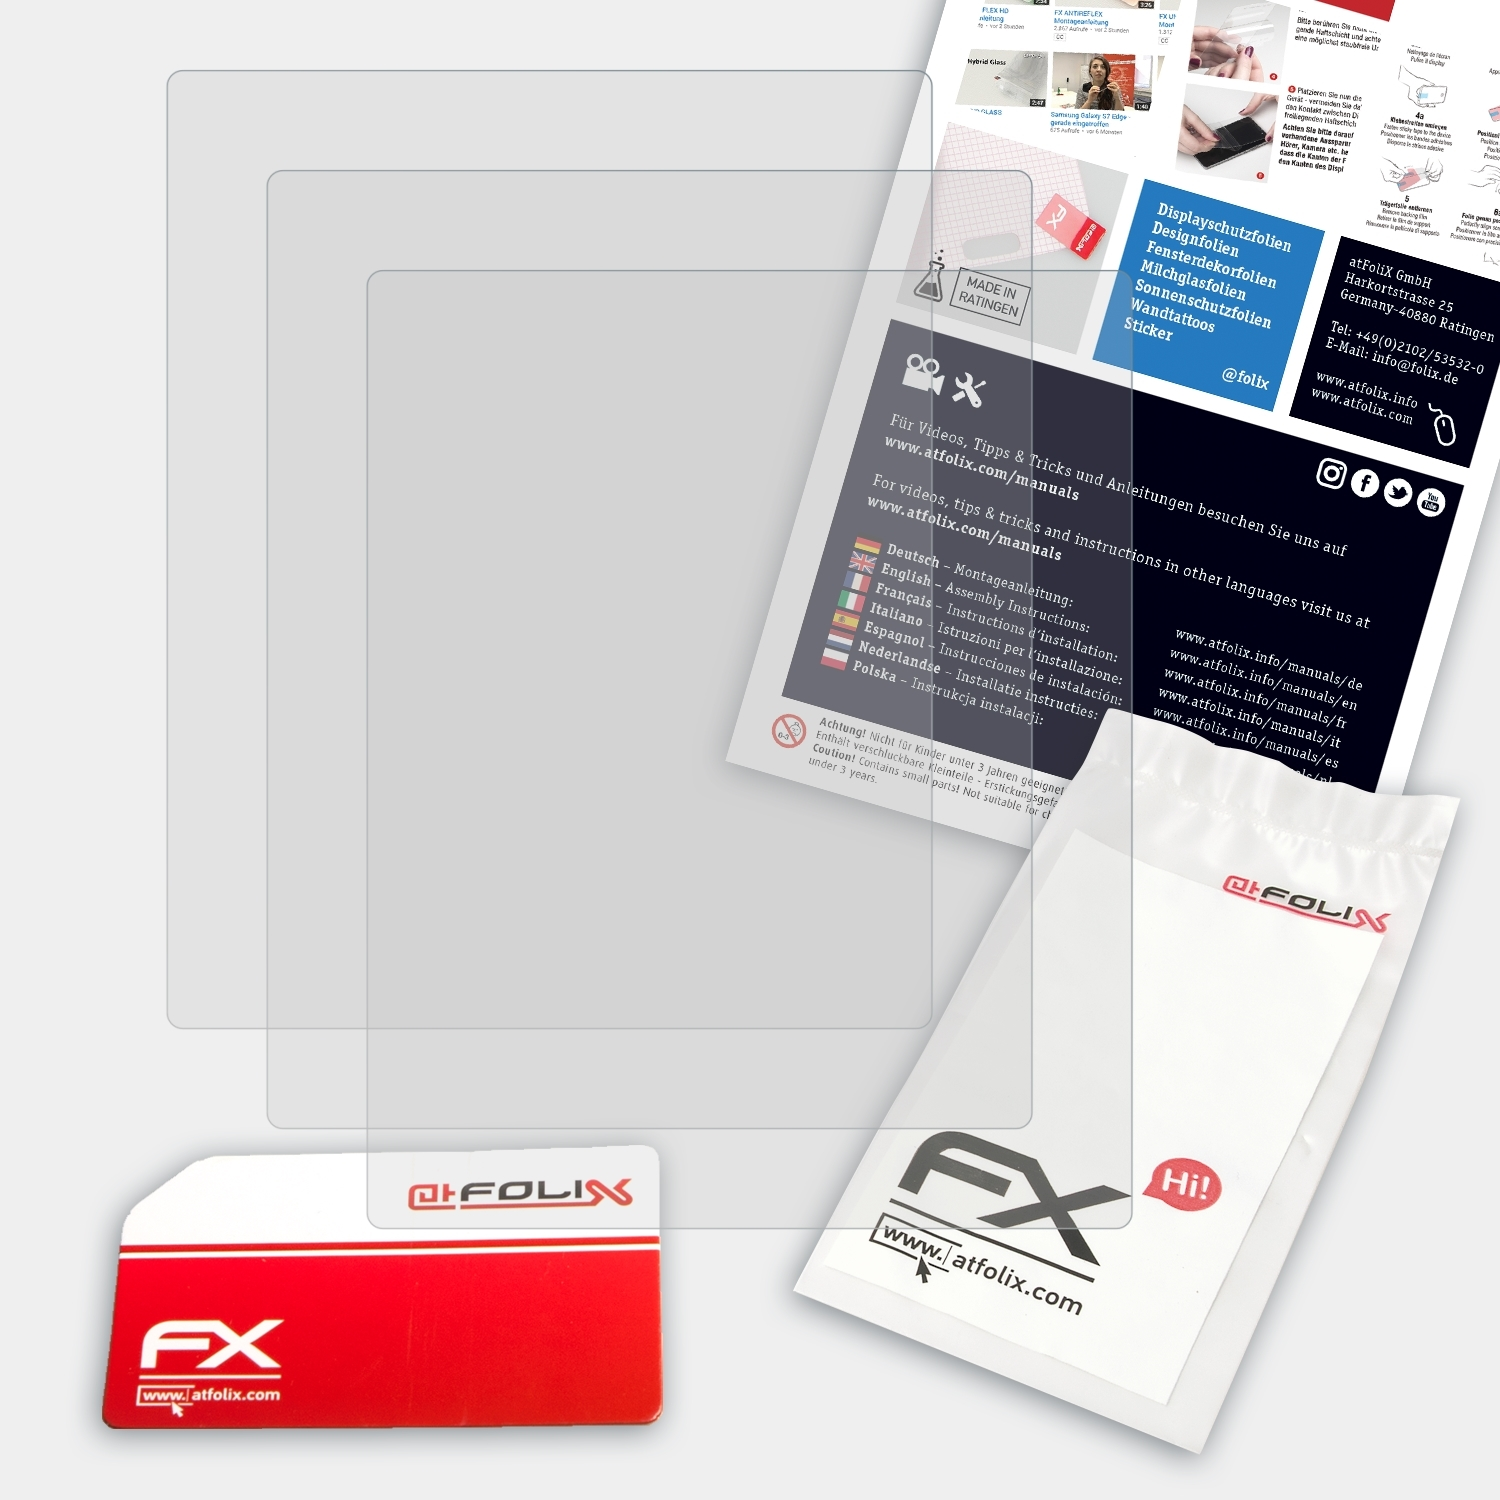 ATFOLIX 3x FX-Antireflex Brinno Displayschutz(für TLC2000)